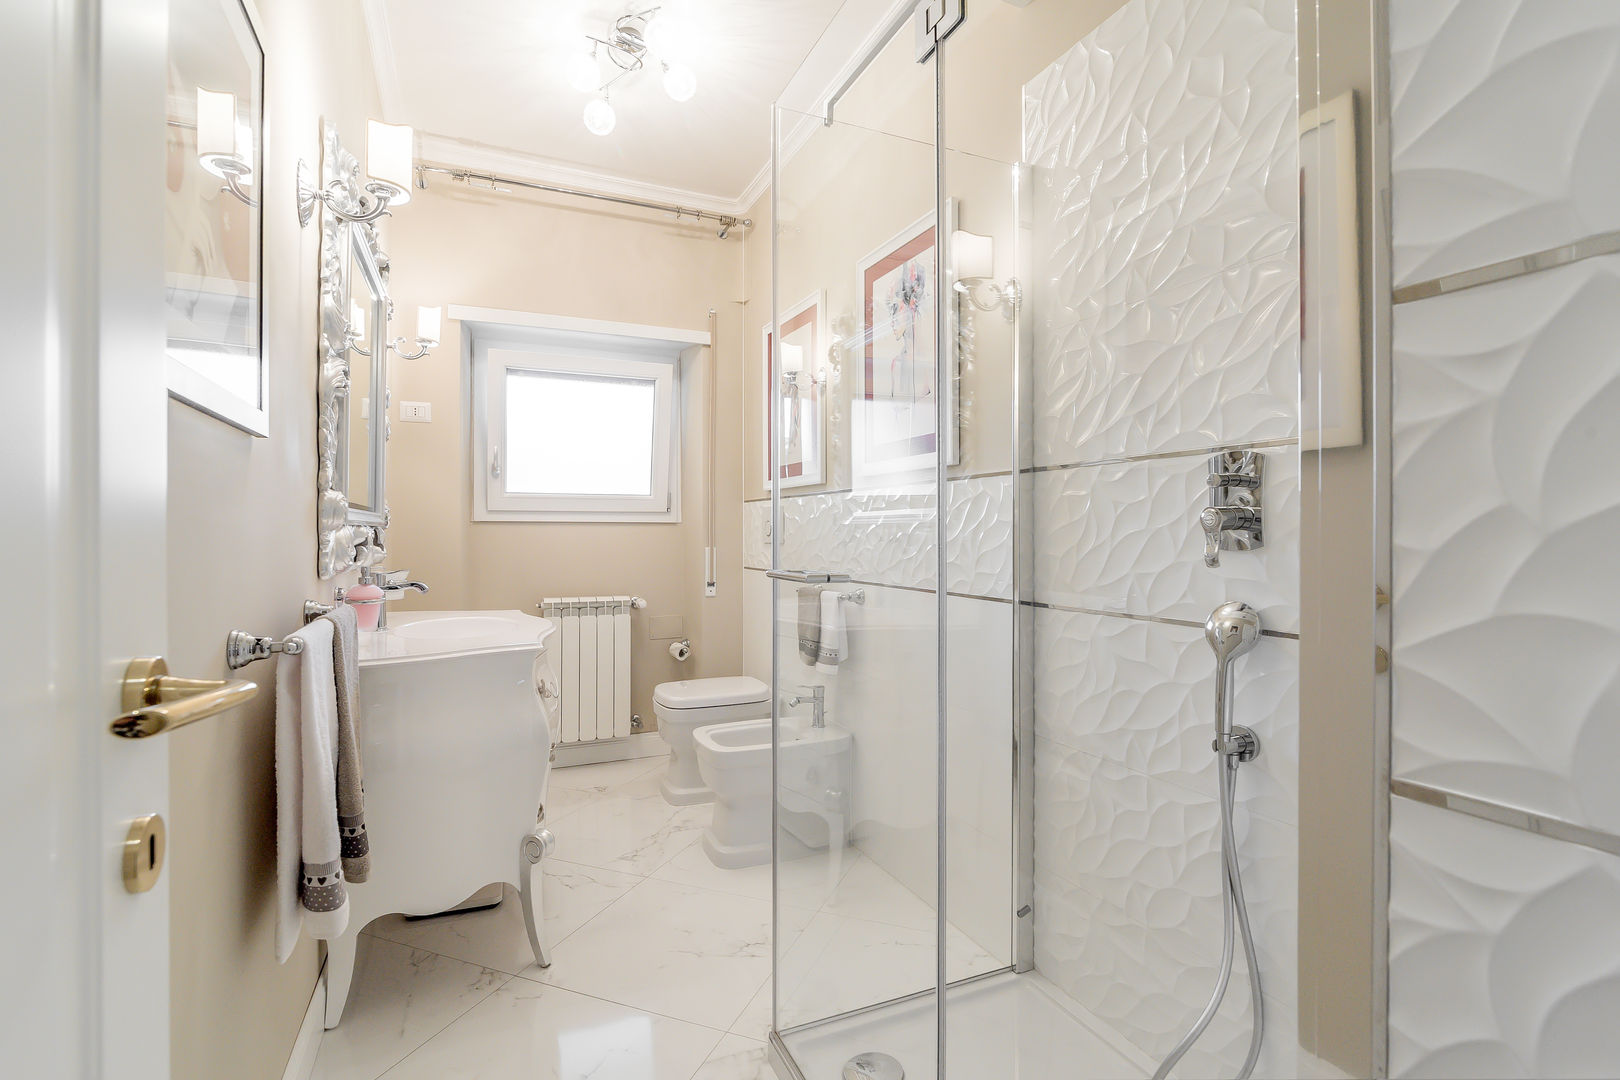 Ristrutturazione appartamento Roma: Nuova disposizione degli spazi, Facile Ristrutturare Facile Ristrutturare Bathroom